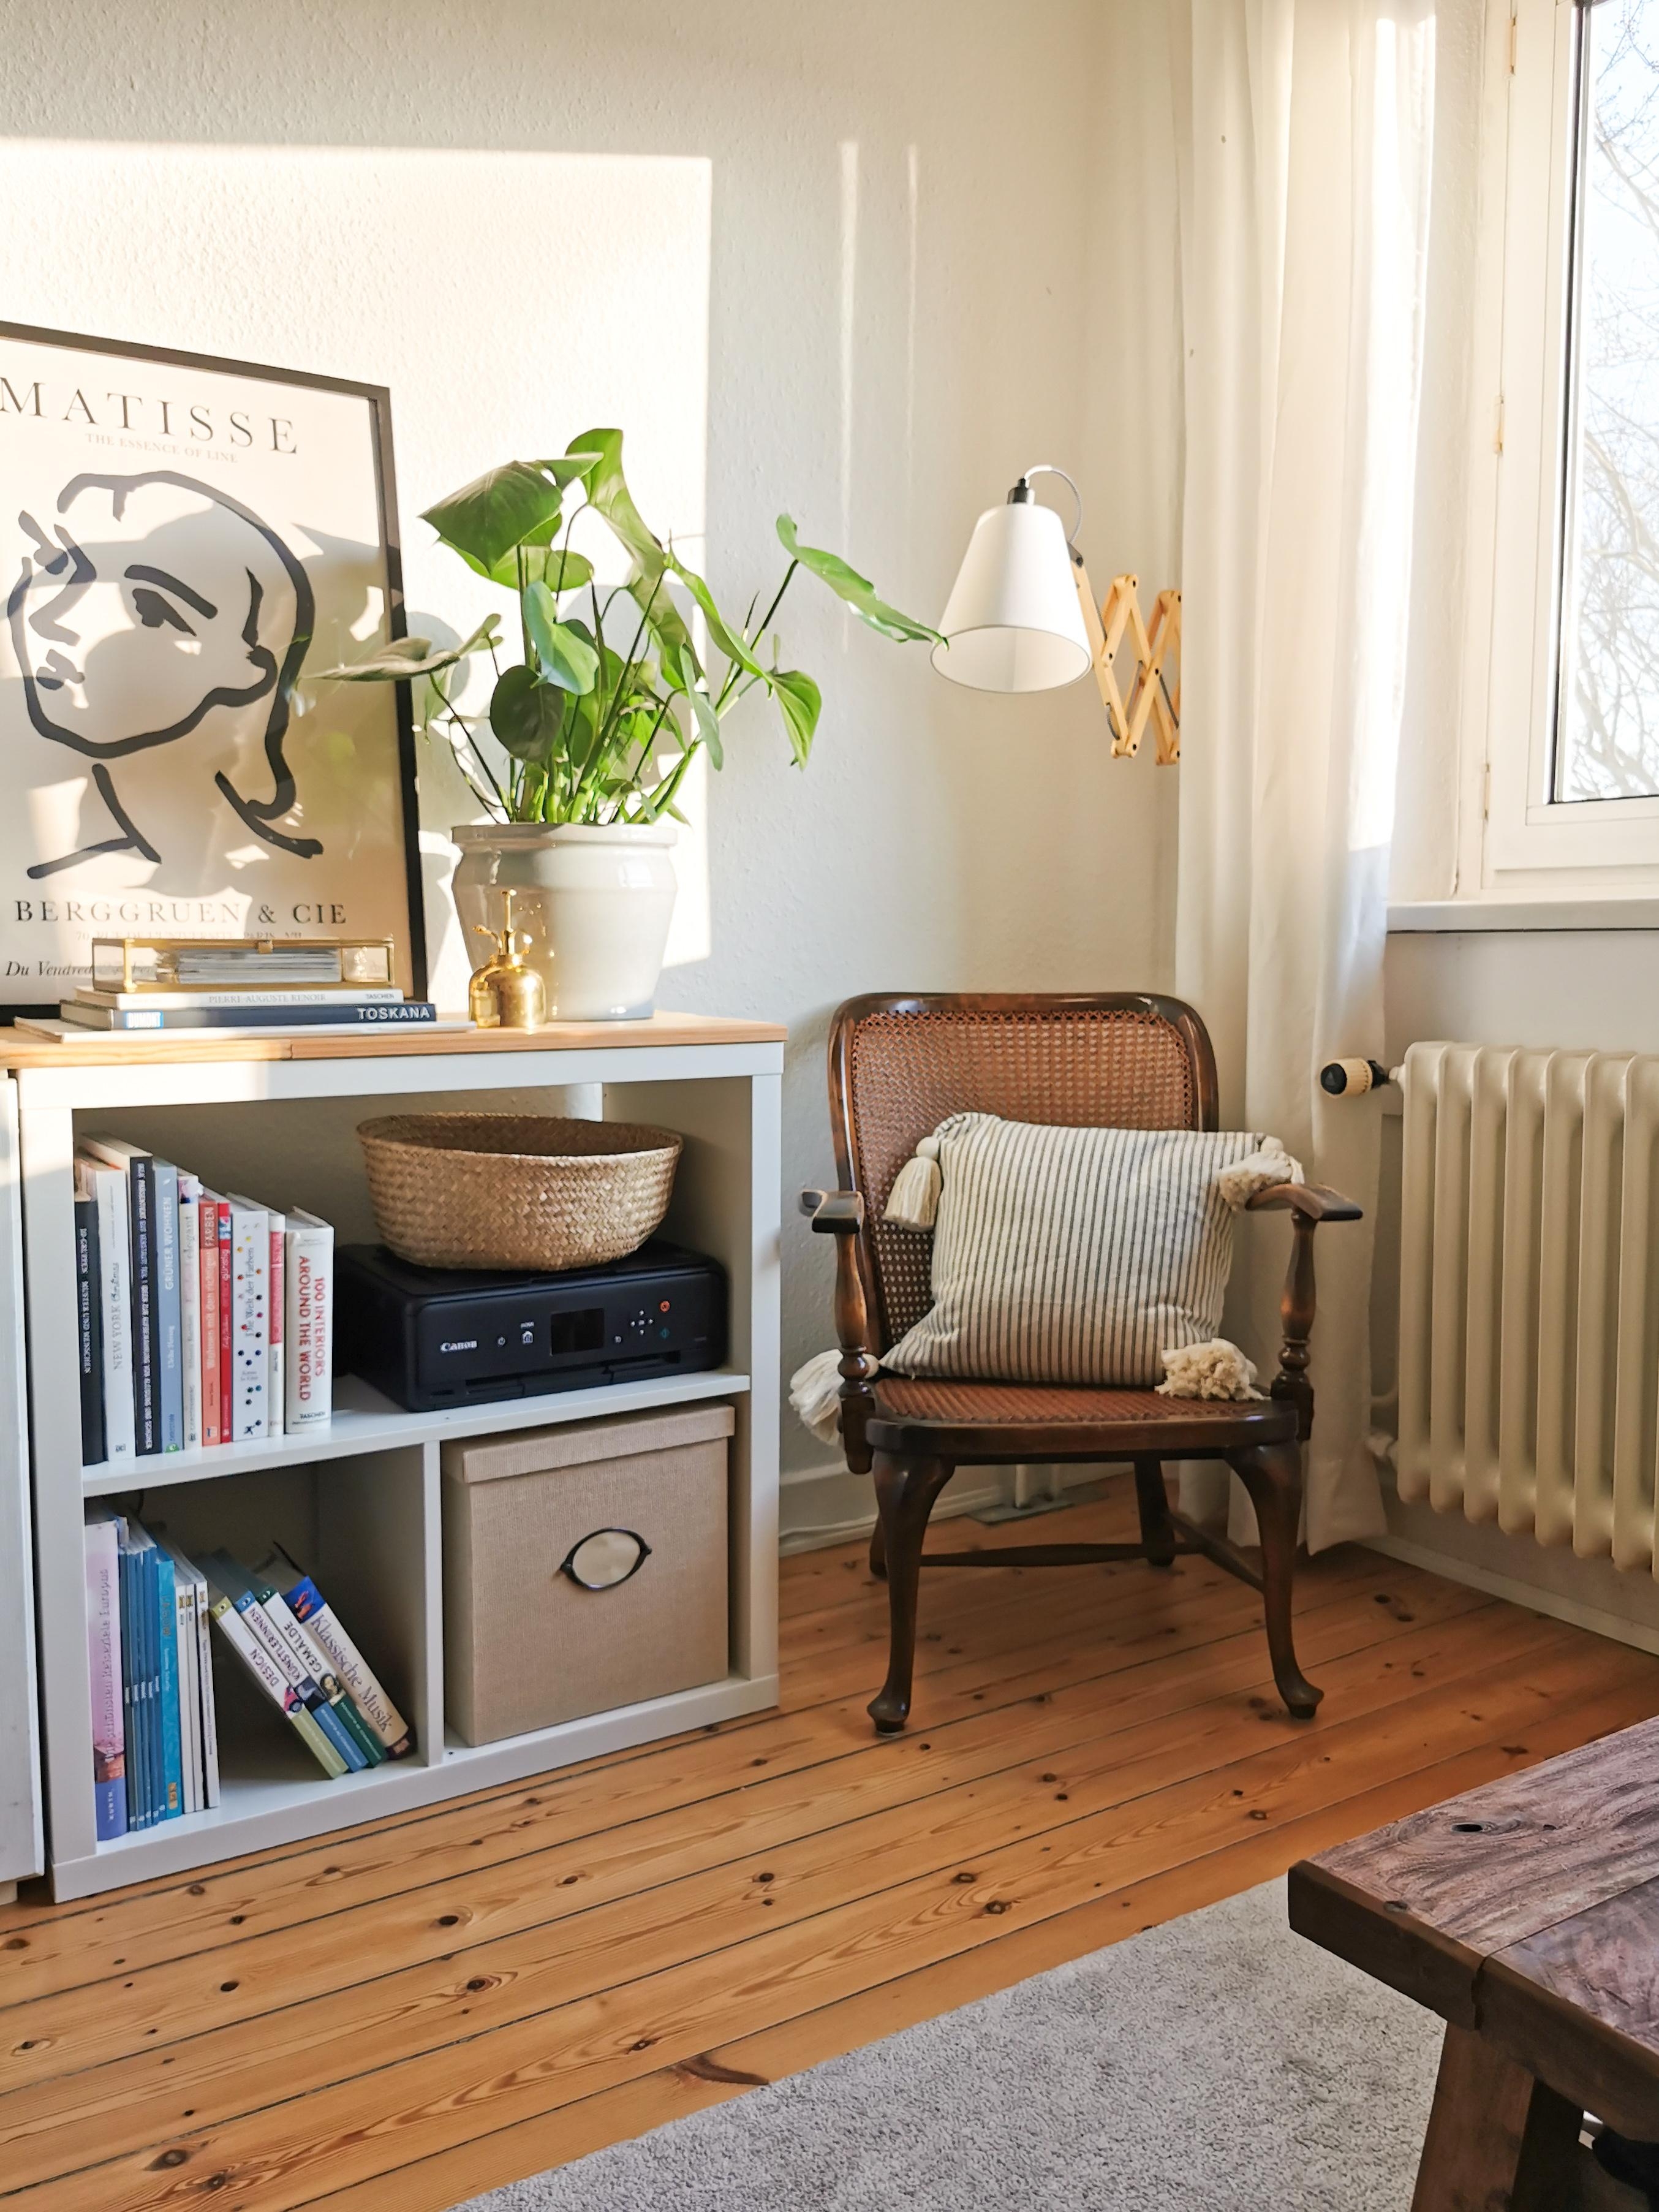 Scherenlampe & Ebaysessel sind ein super Duo :) #vintage #bohostyle #kleinewohnung #wohnzimmer #wienergeflecht